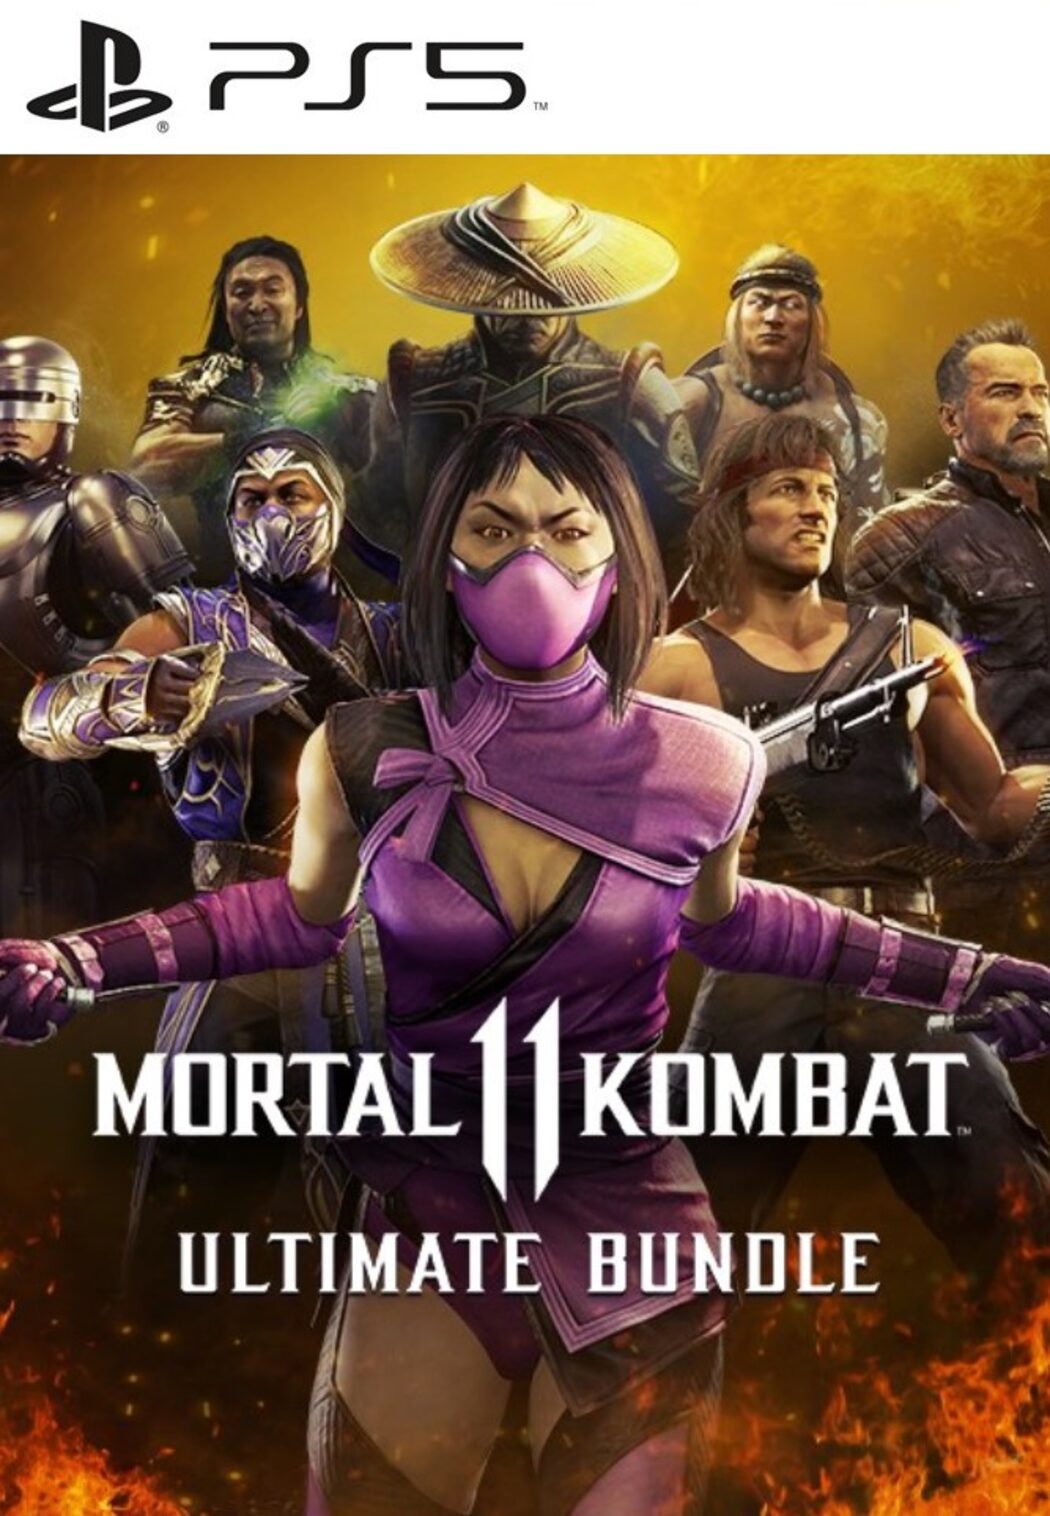 Mortal Kombat 11 Ultimate Kombat Pack 2 release time for Rambo, Mileena,  Rain DLC update, Gaming, Entertainment